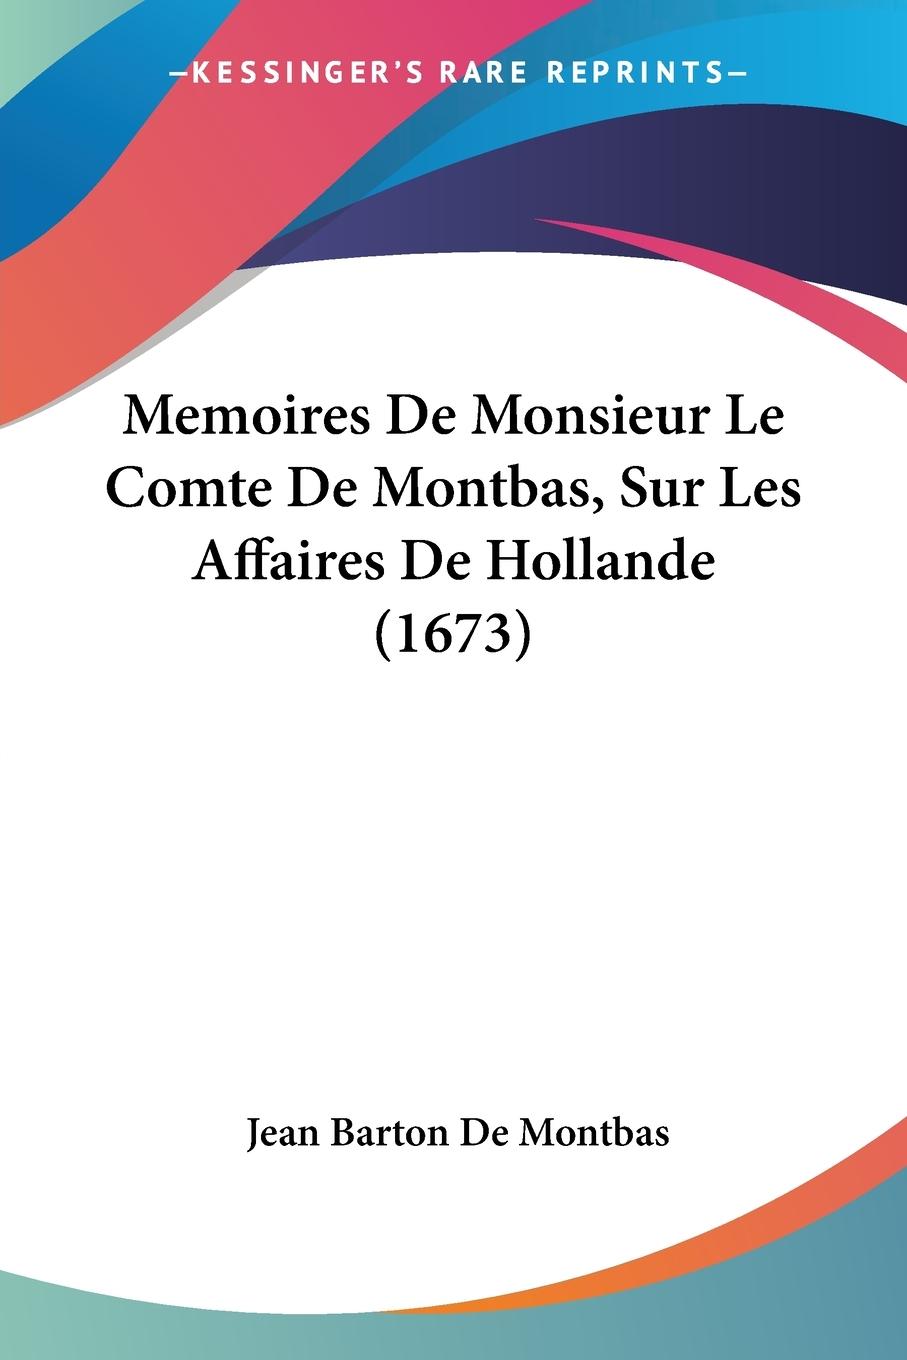 Memoires De Monsieur Le Comte De Montbas, Sur Les Affaires De Hollande (1673) - Montbas, Jean Barton De